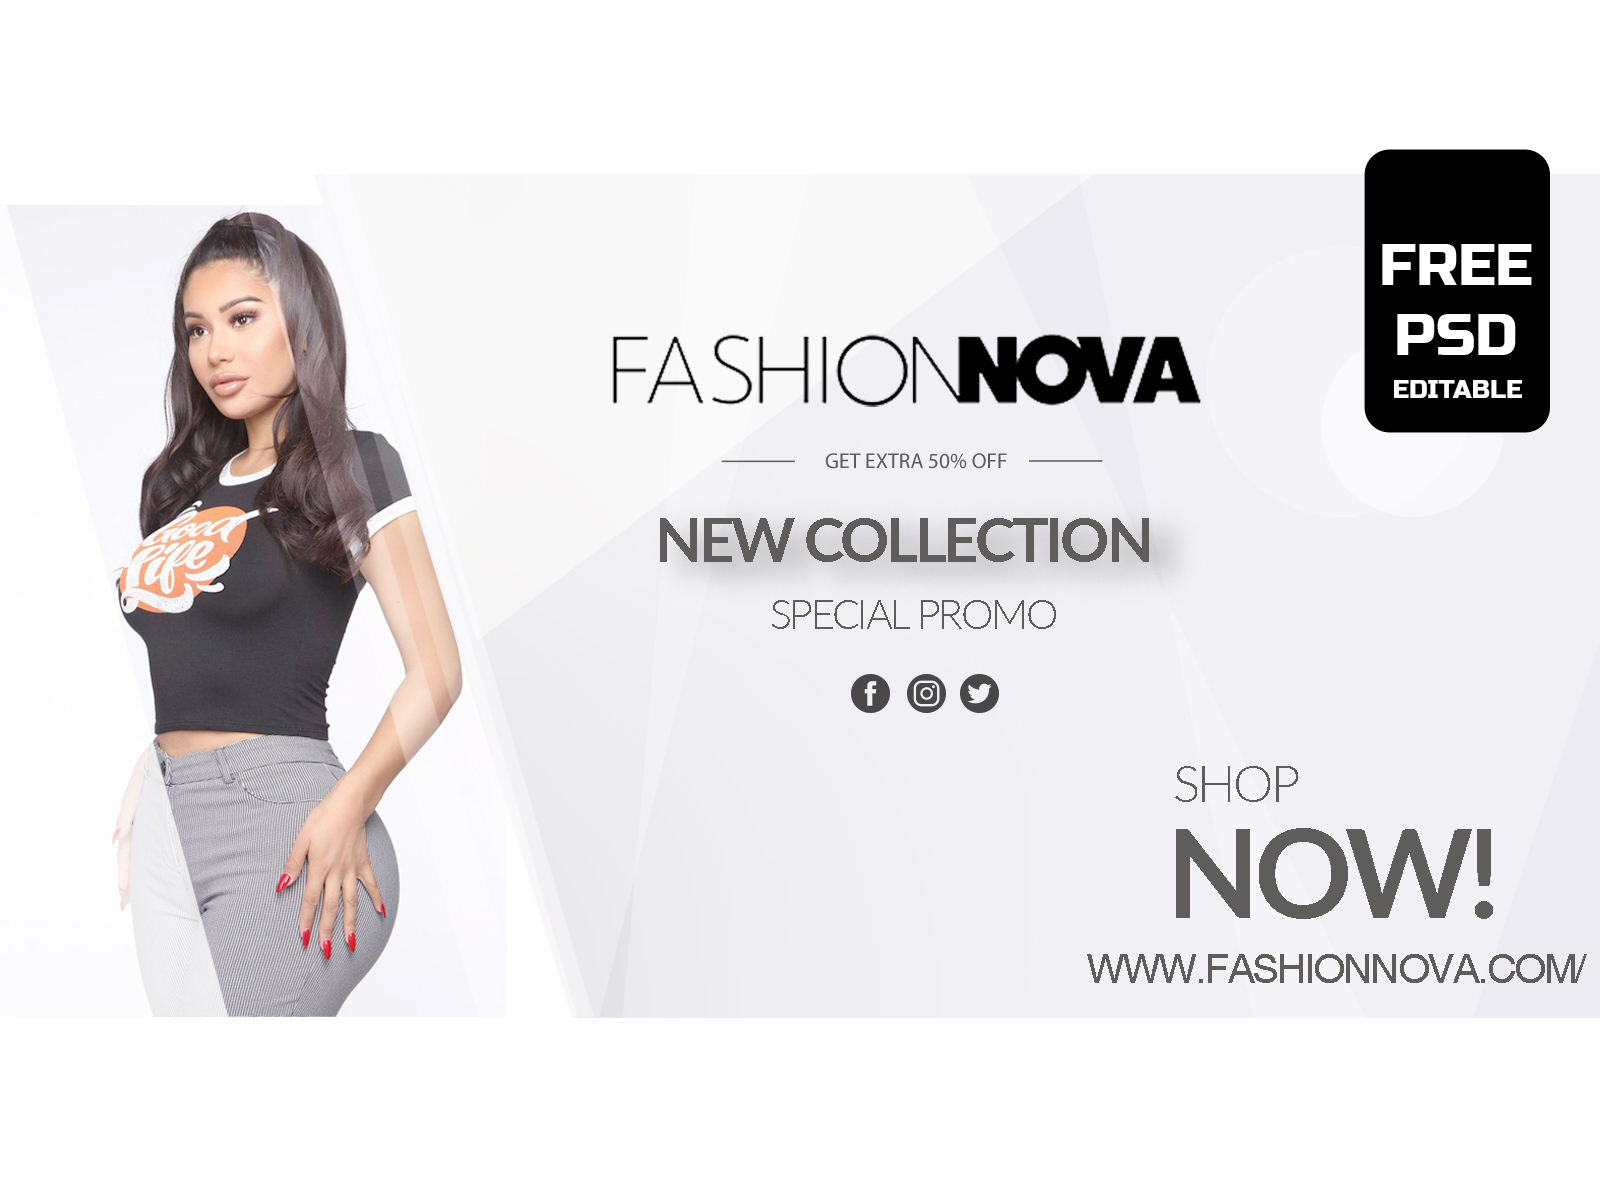 Fashion Nova Banner by Brush Ross on Dribbble